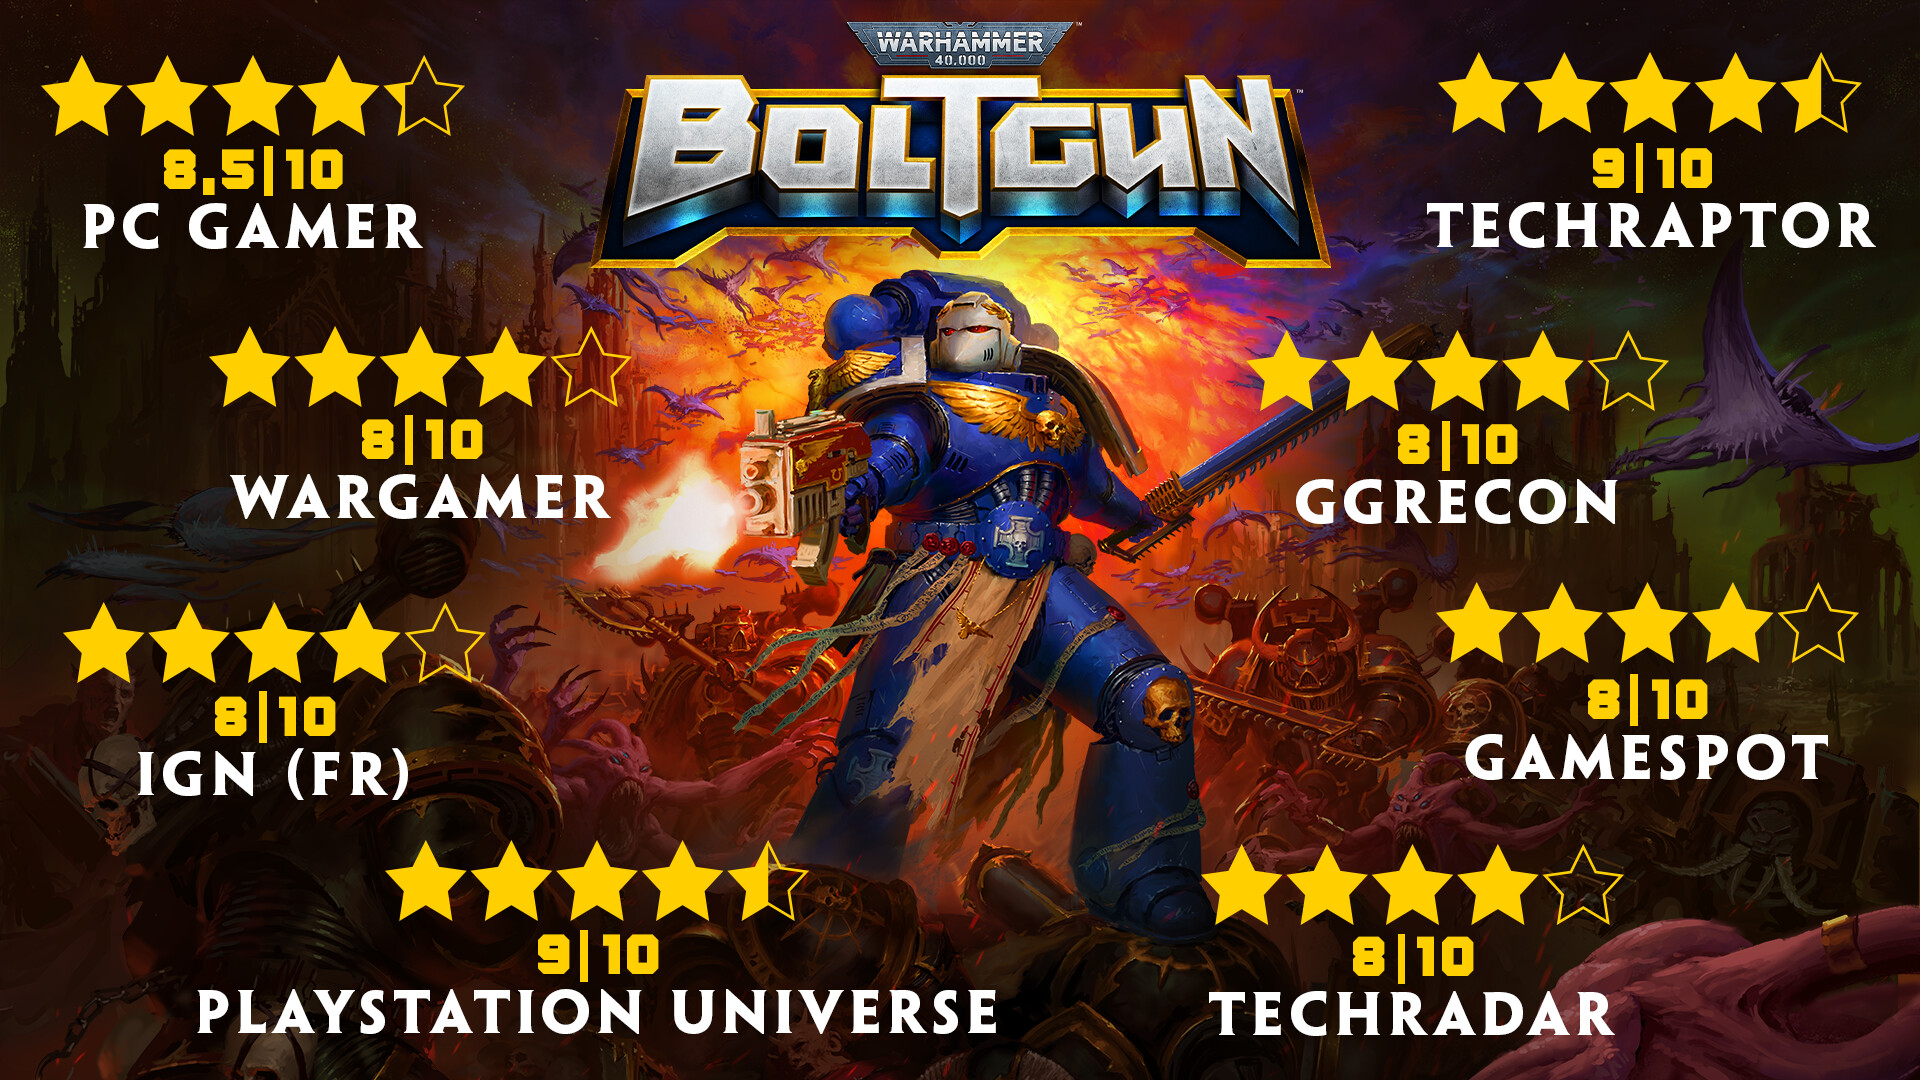 Find the best computers for Warhammer 40,000: Boltgun